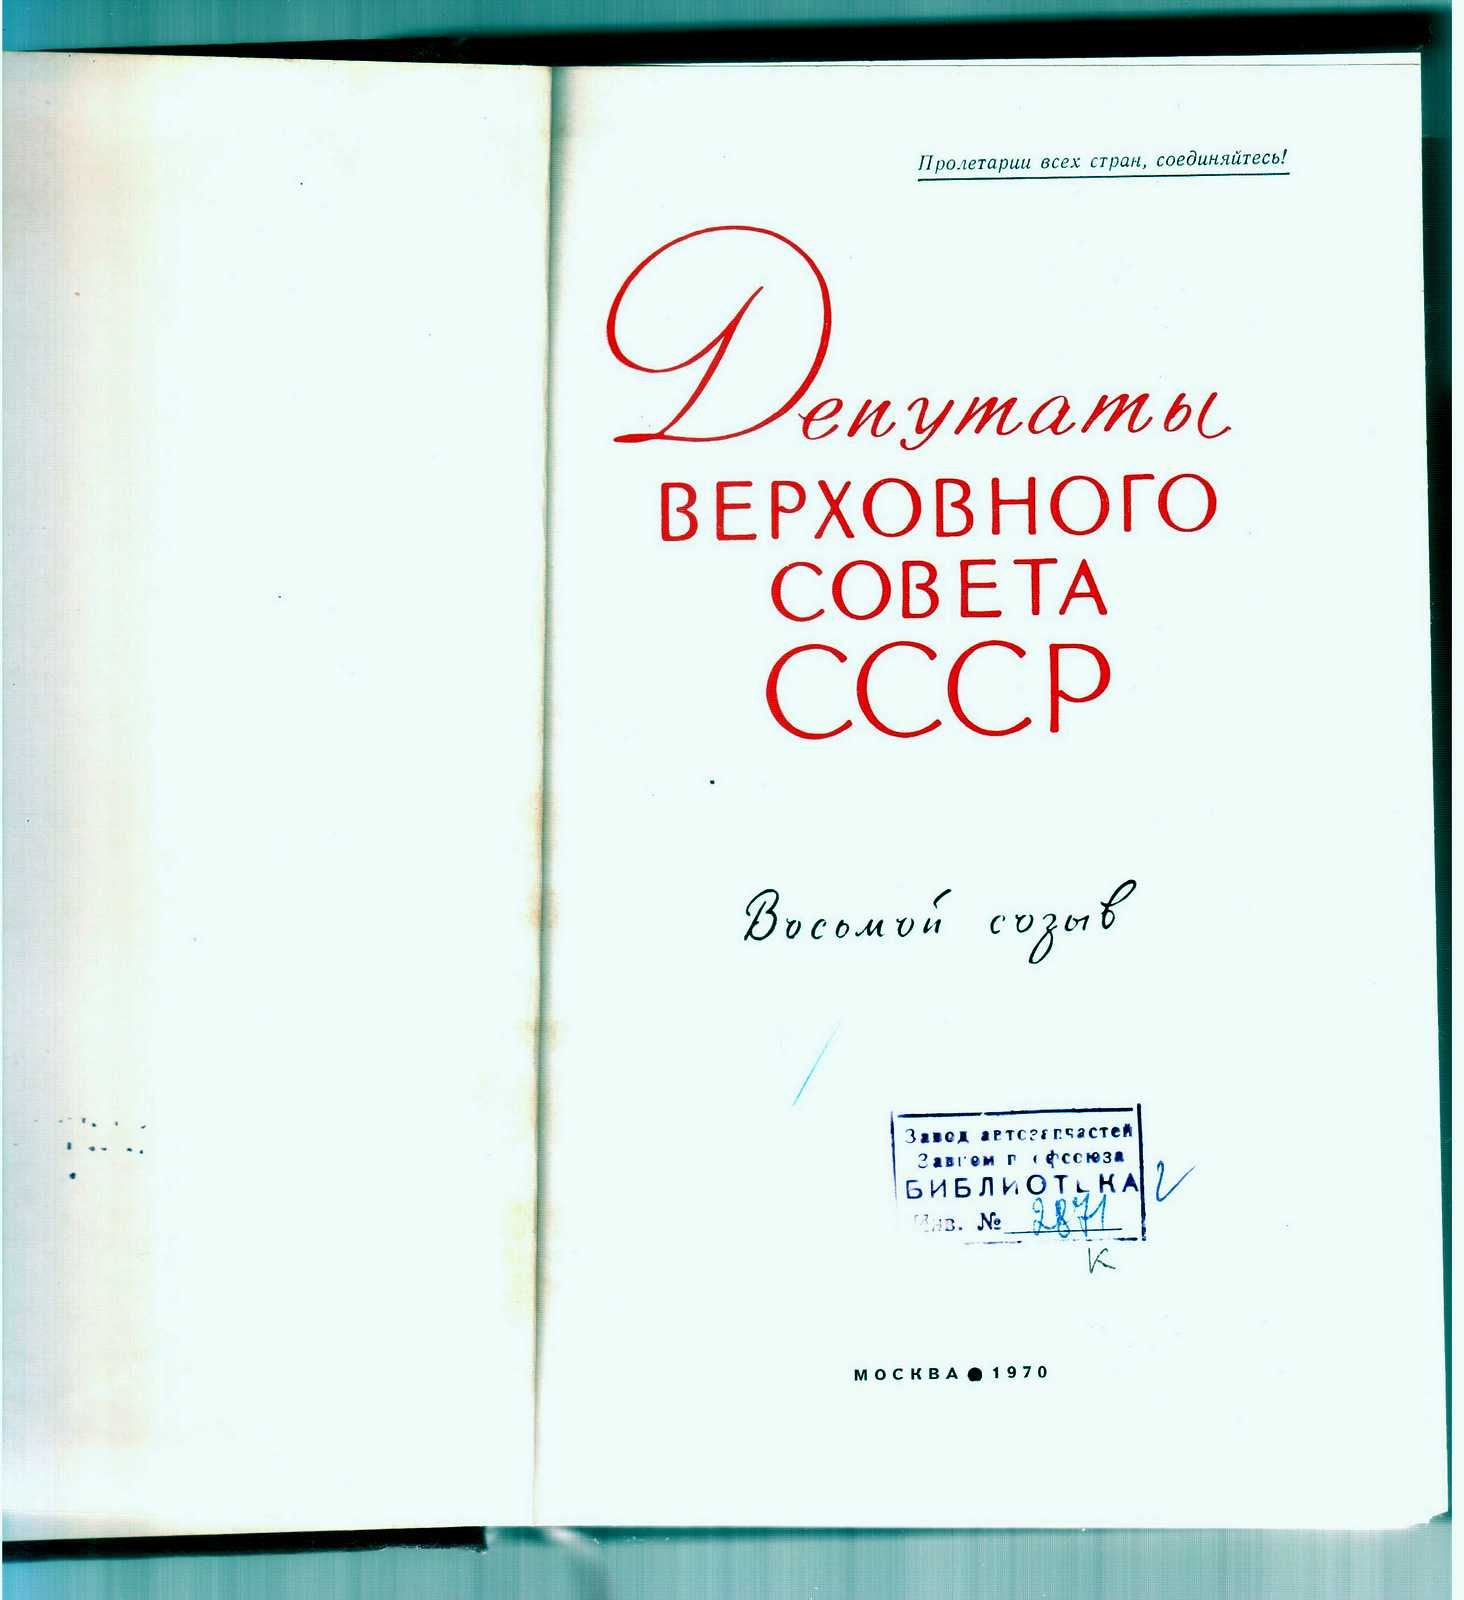 Депутаты Верховного Совета СССР 8-го созыва. (Биографии) М., 1970